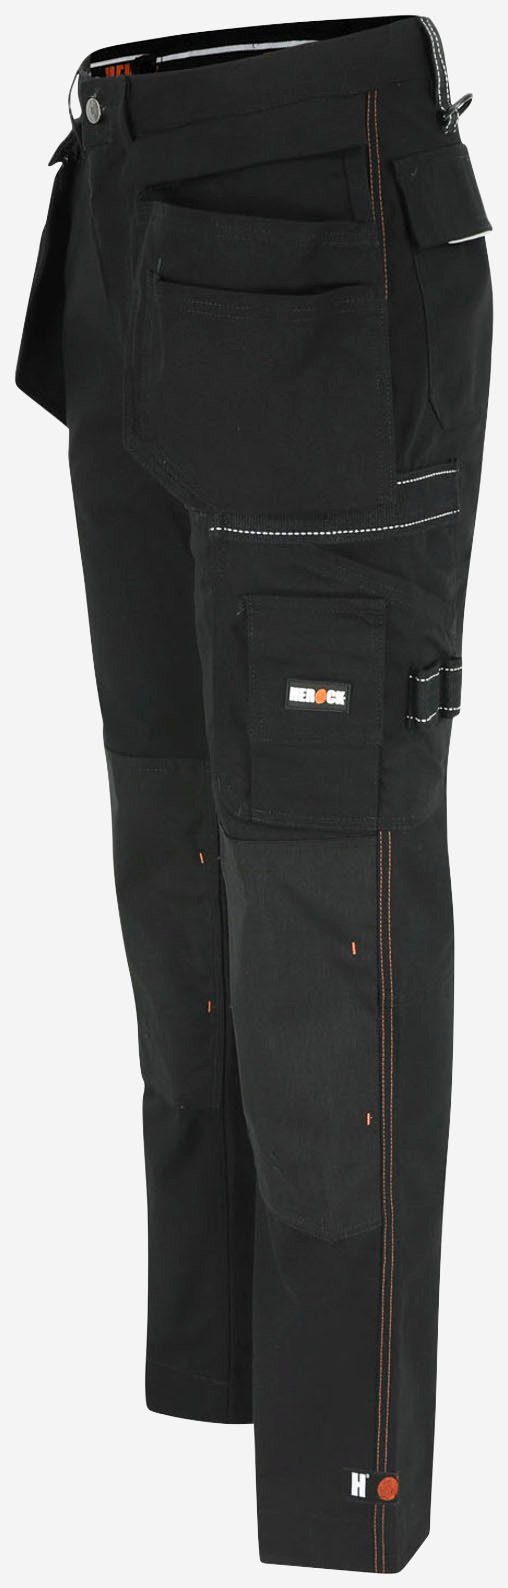 Nageltaschen Bund, verstellb. abzippb. Arbeitshose Hercules Hose schwarz Wasserabweisend, Multi-Pocket, Herock